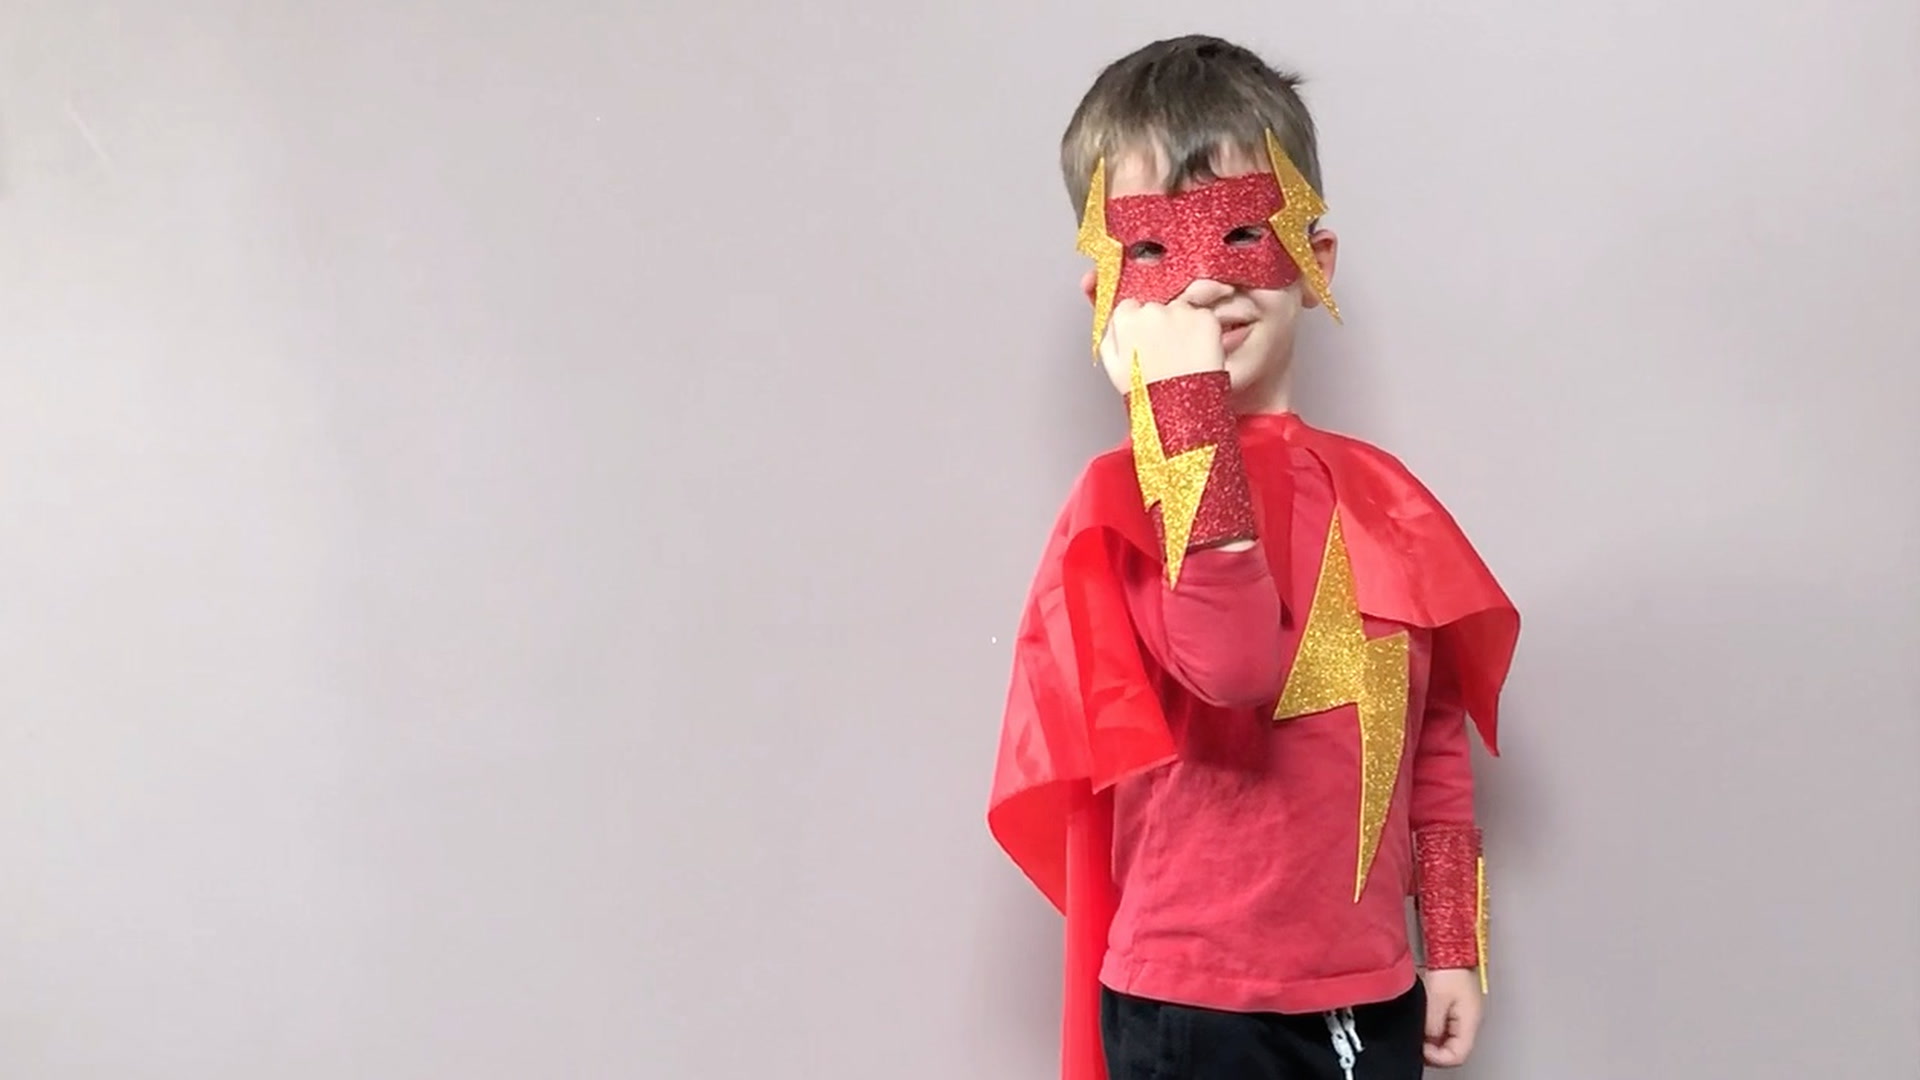 Cape et masque de super héros-déguisement enfants – Créations